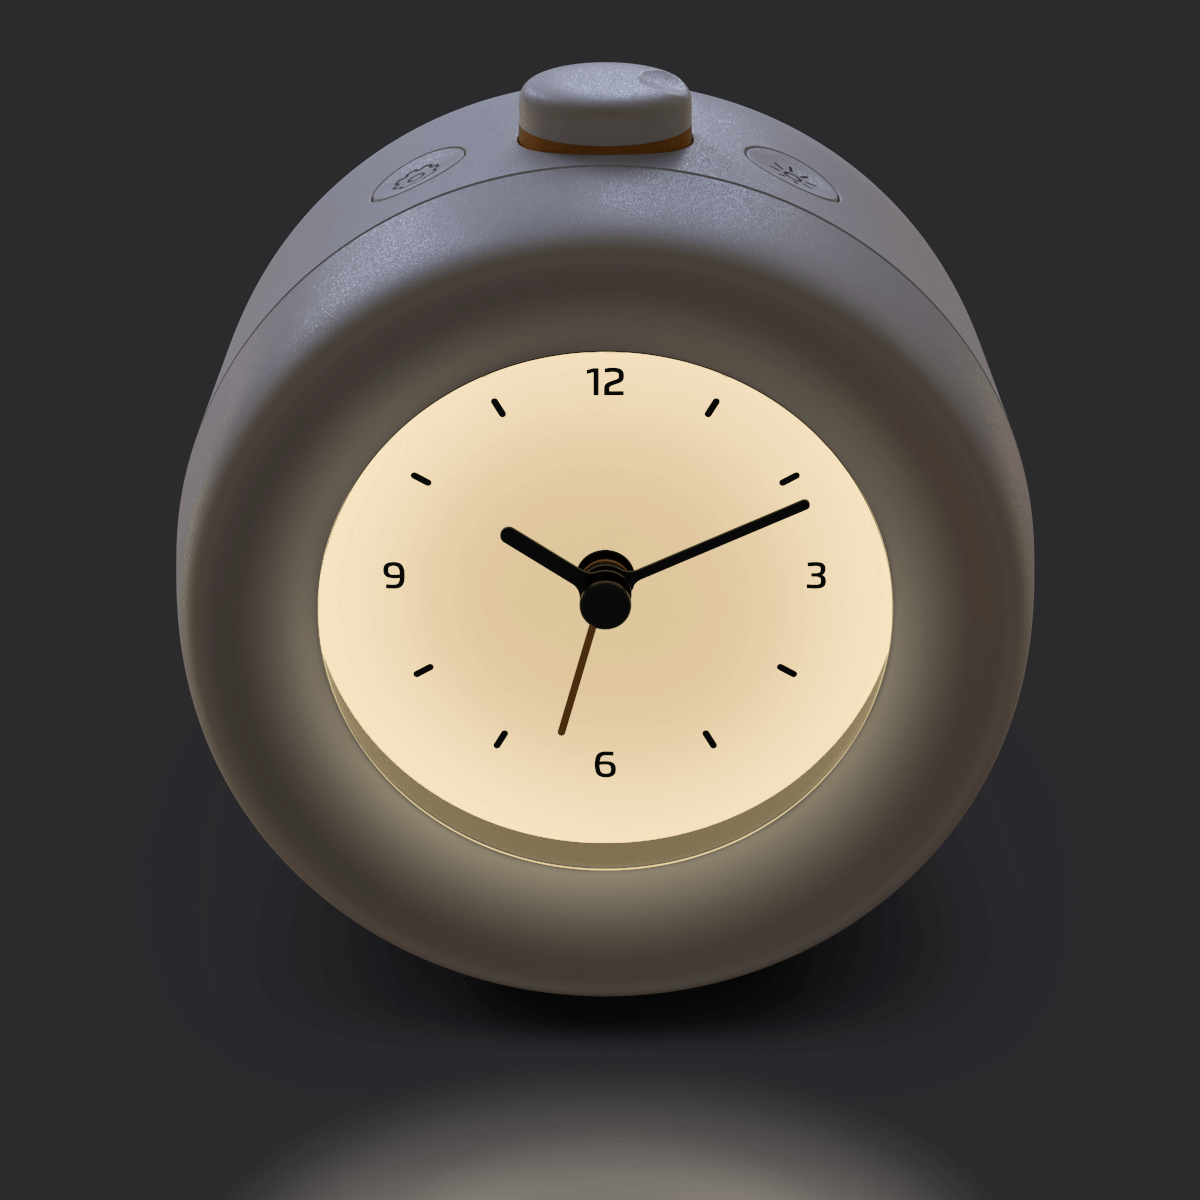 Mudita Store  Unique Analog Alarm Clock - Mudita Bell - Buy Now